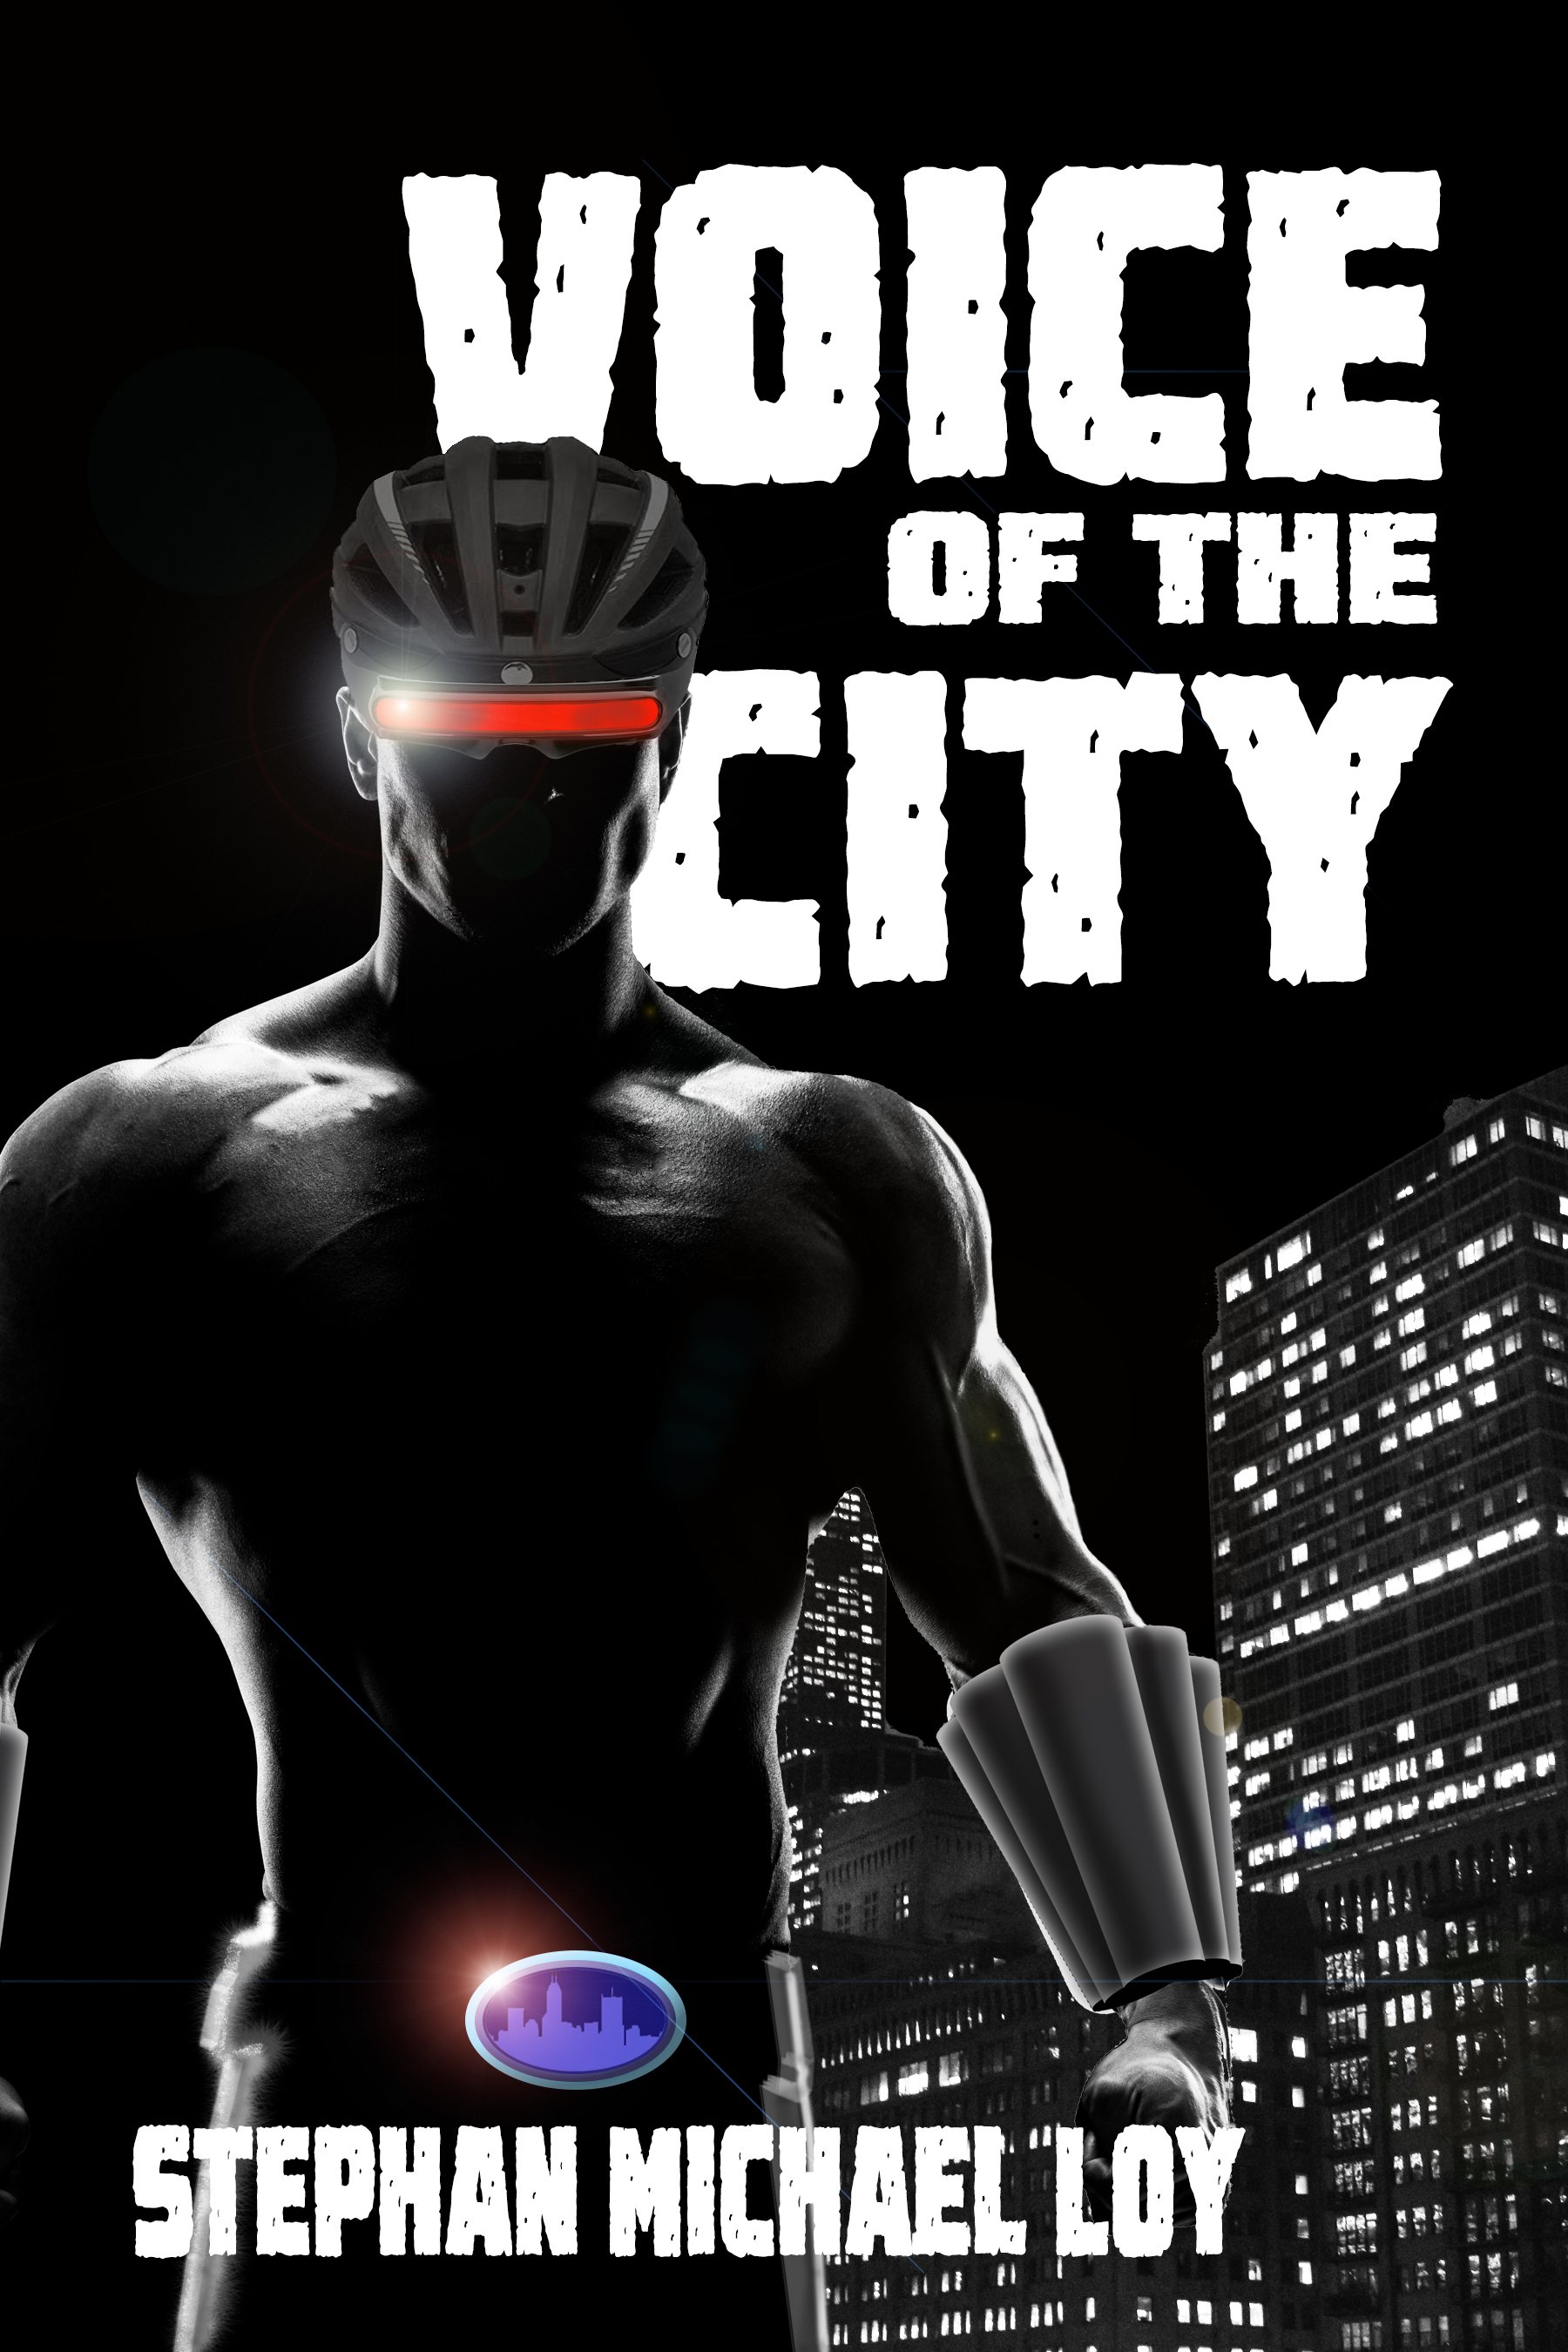 Urban Fantasy - Superhero